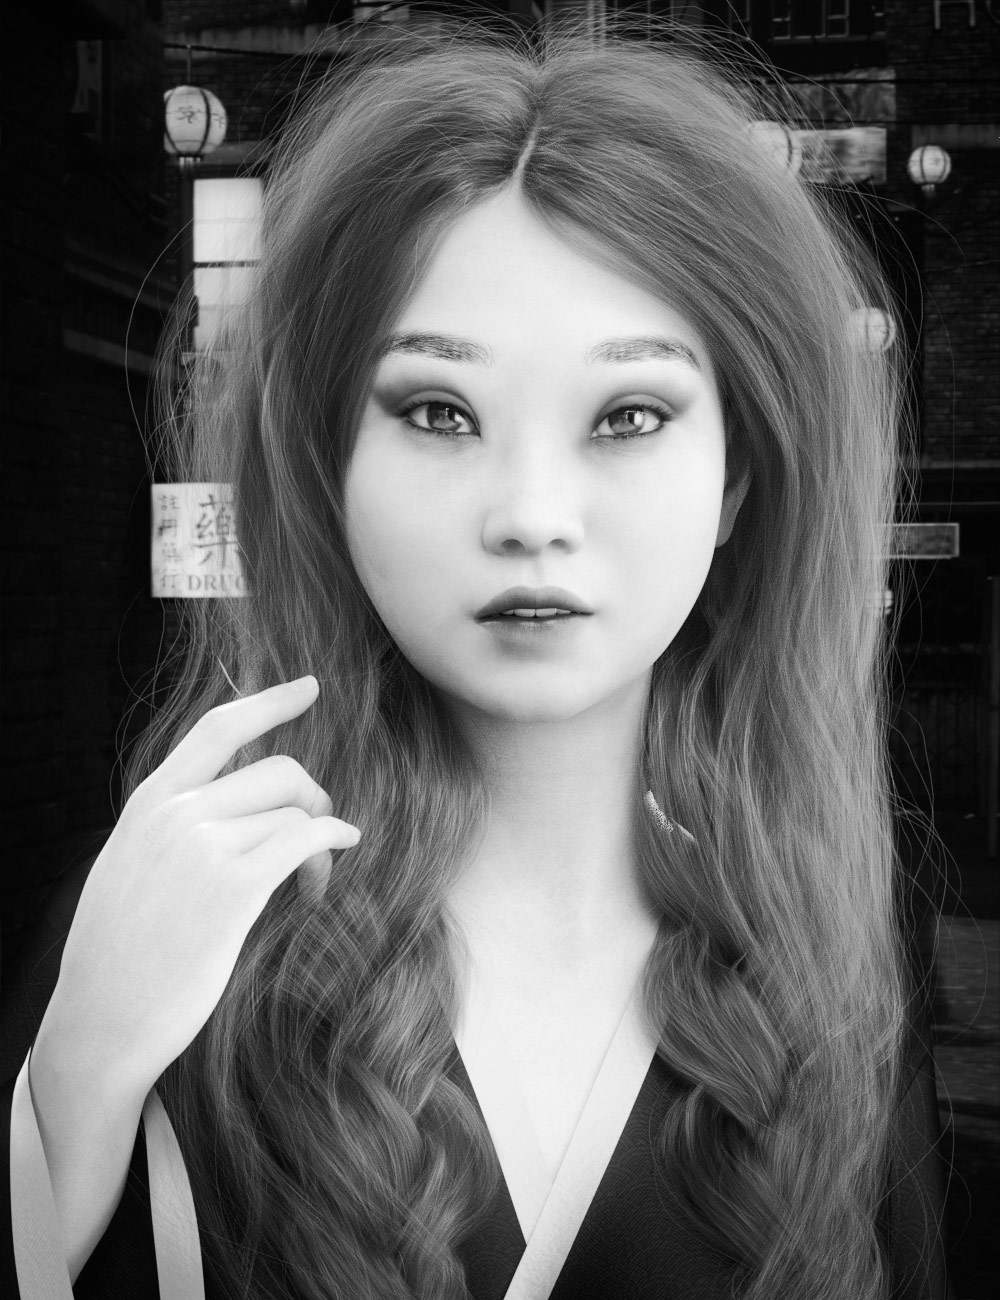 Shihong Nuwa for Genesis 8 Female by: DreamlightWarloc, 3D Models by Daz 3D